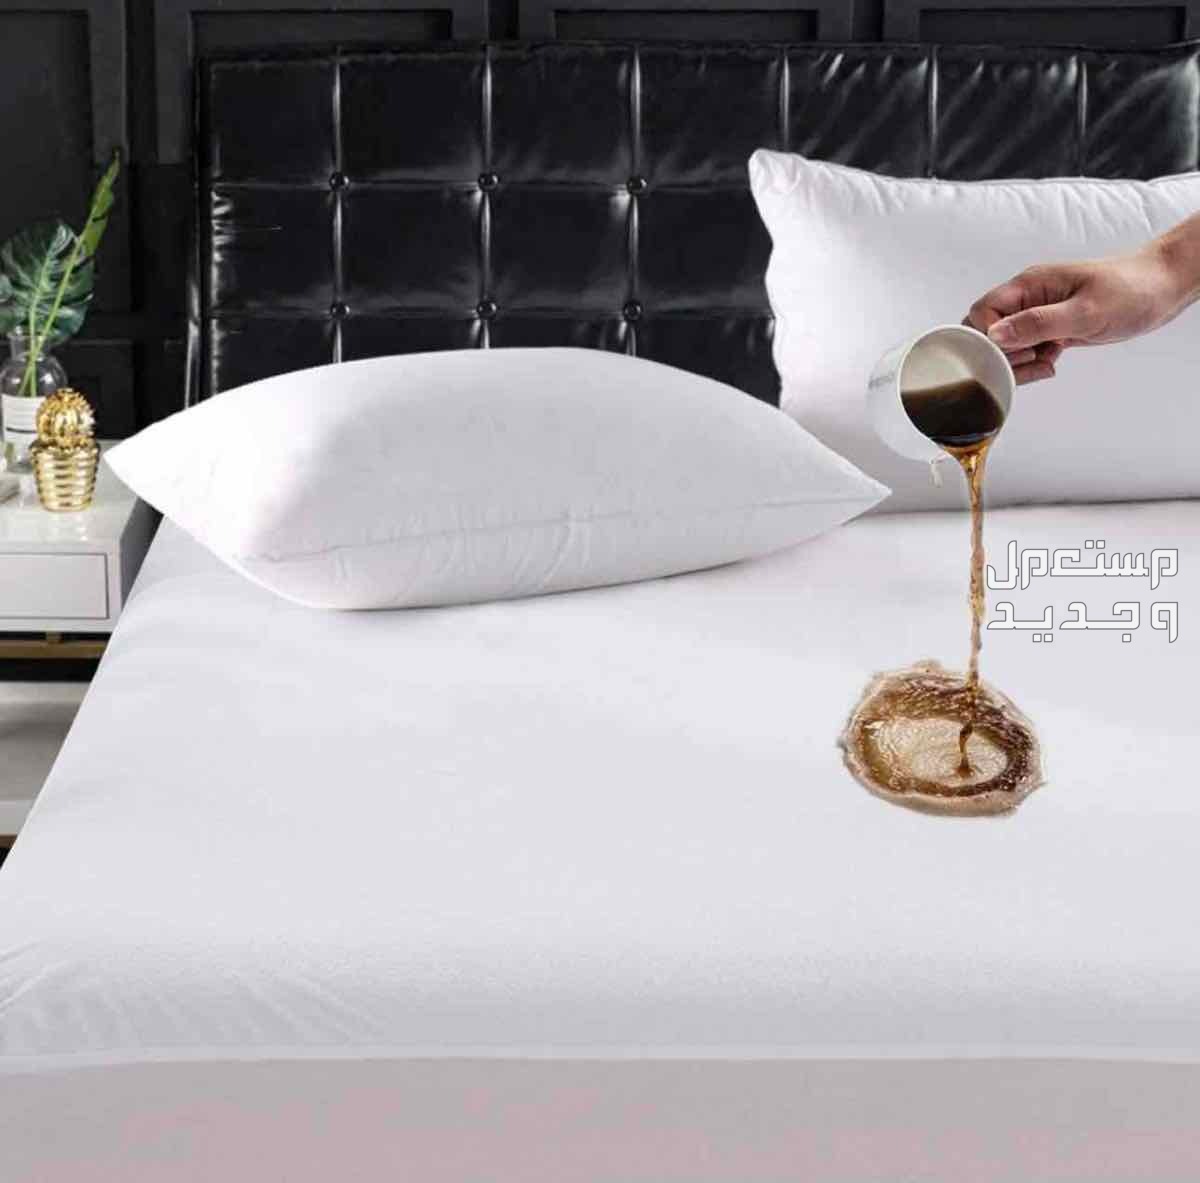 غطاء لحماية مرتبة سريرك من السوائل و الحشرات وتحافظ على عمر مرتبة سريرك. مزود بمطاط يناسب حتى ارتفاع 56 سم.